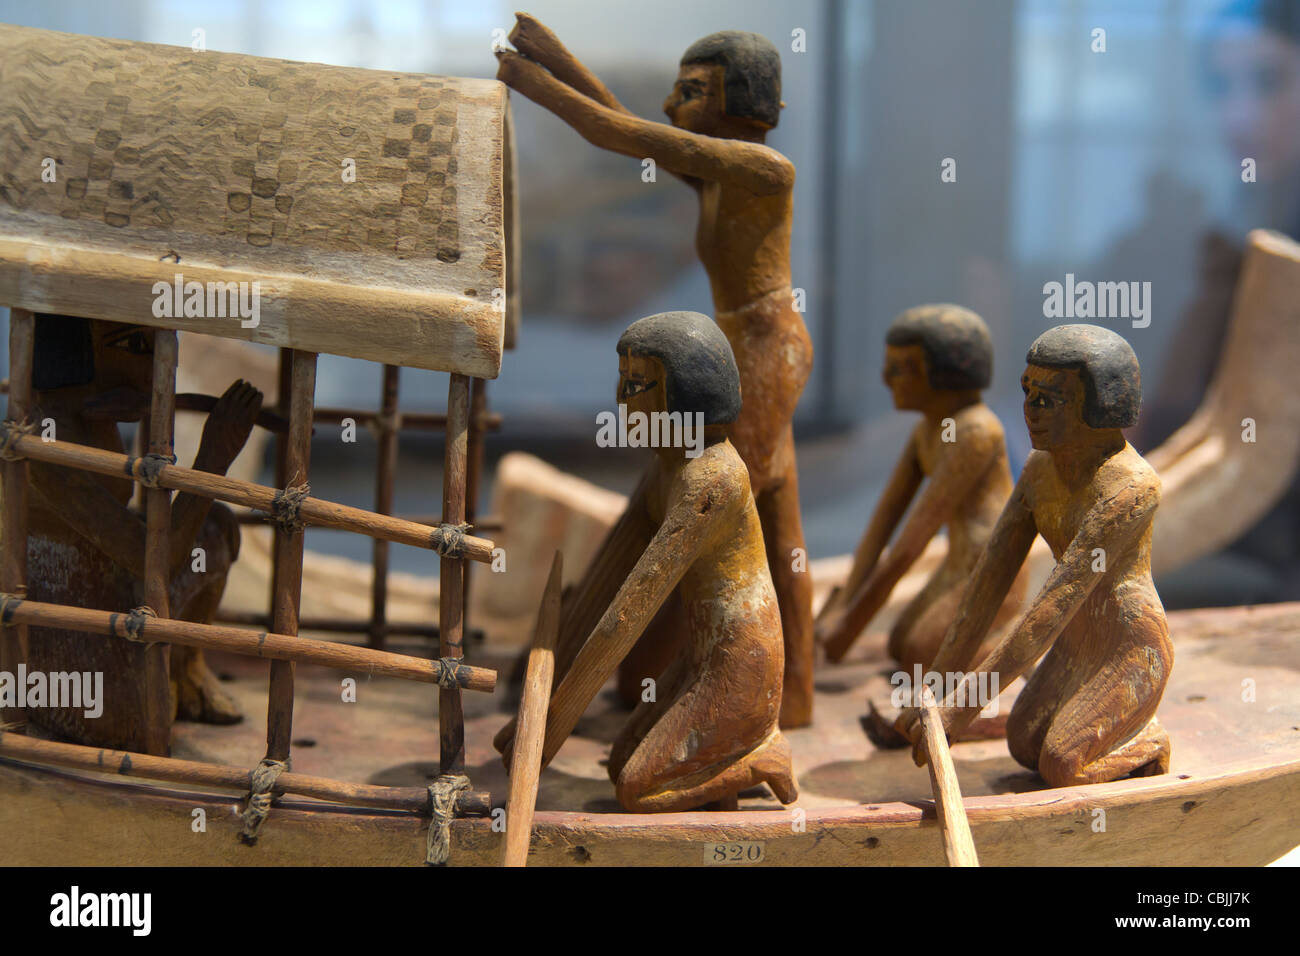 Bateau égyptien modèle en bois provenant de l'Empire du Milieu, le Musée du Louvre, Paris, France Banque D'Images